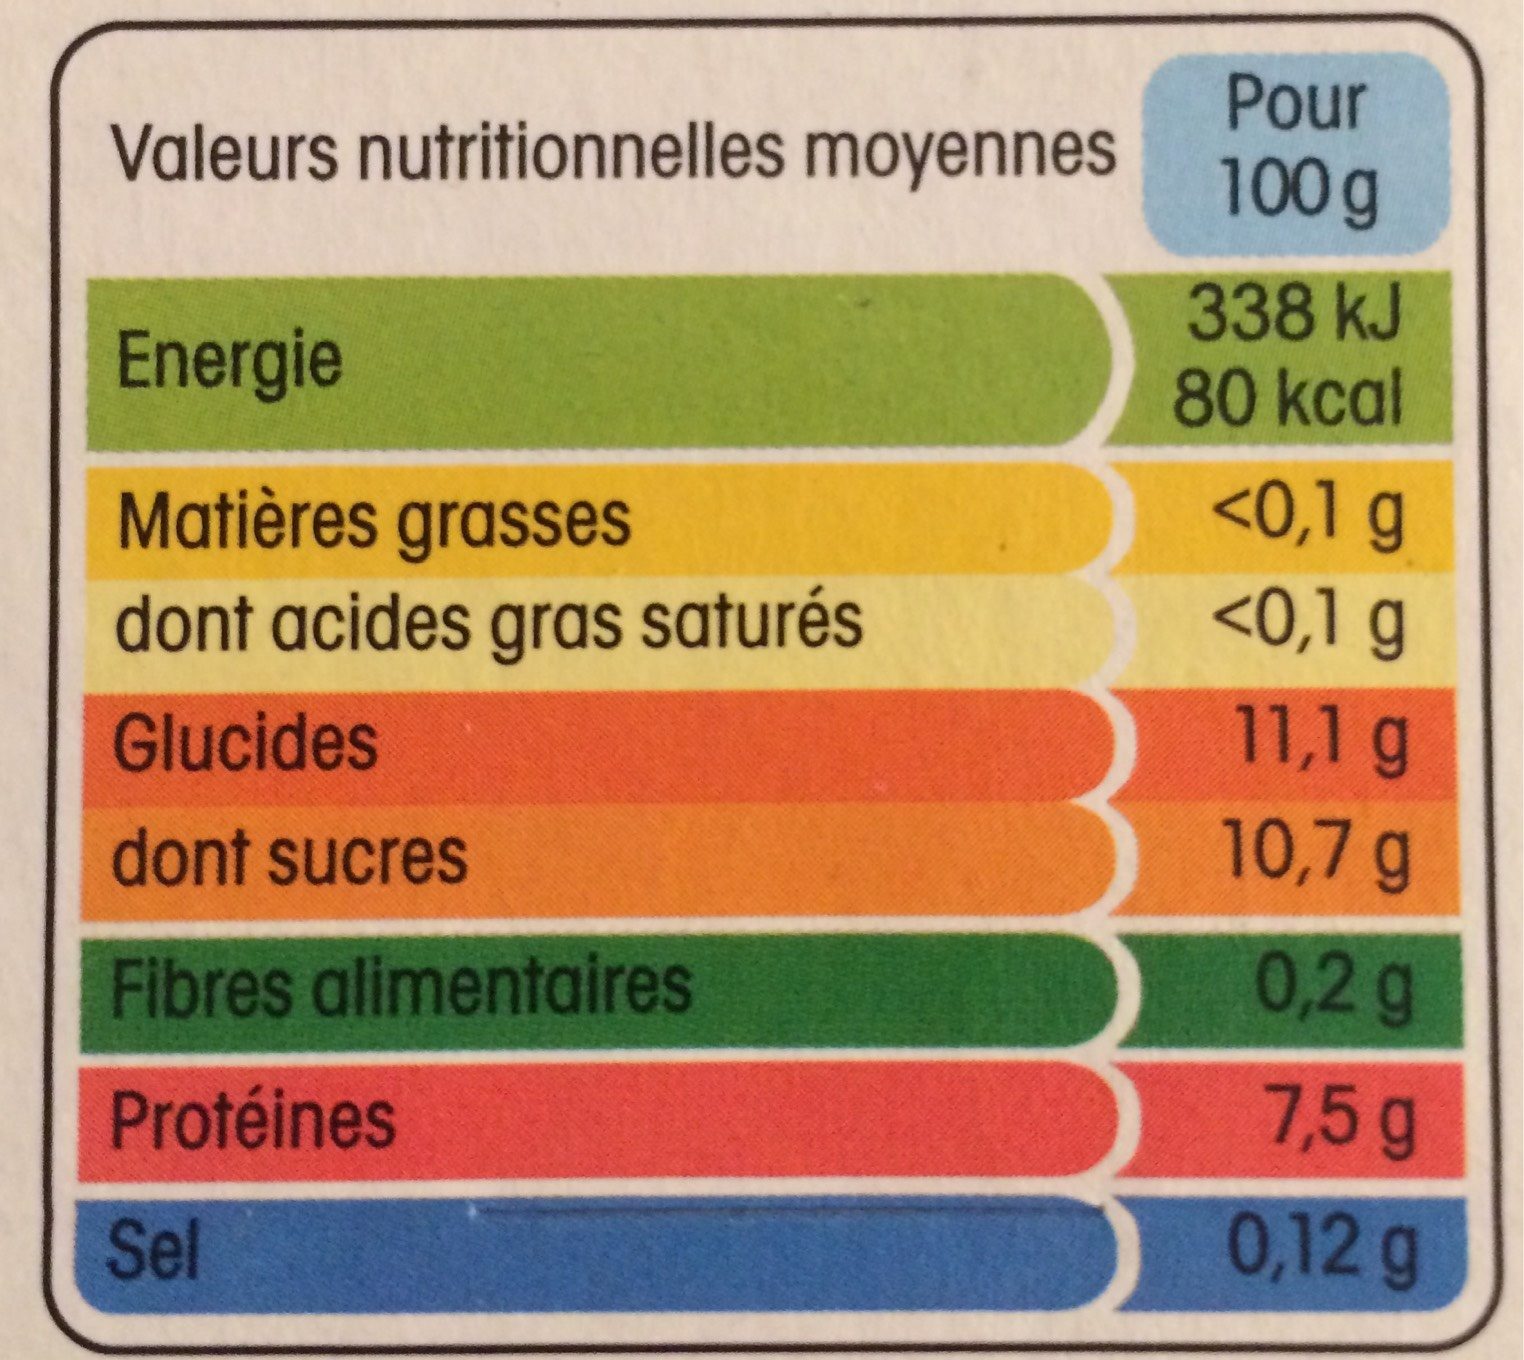 Recette au yaourt nature, sur lit de fraise - Nutrition facts - fr